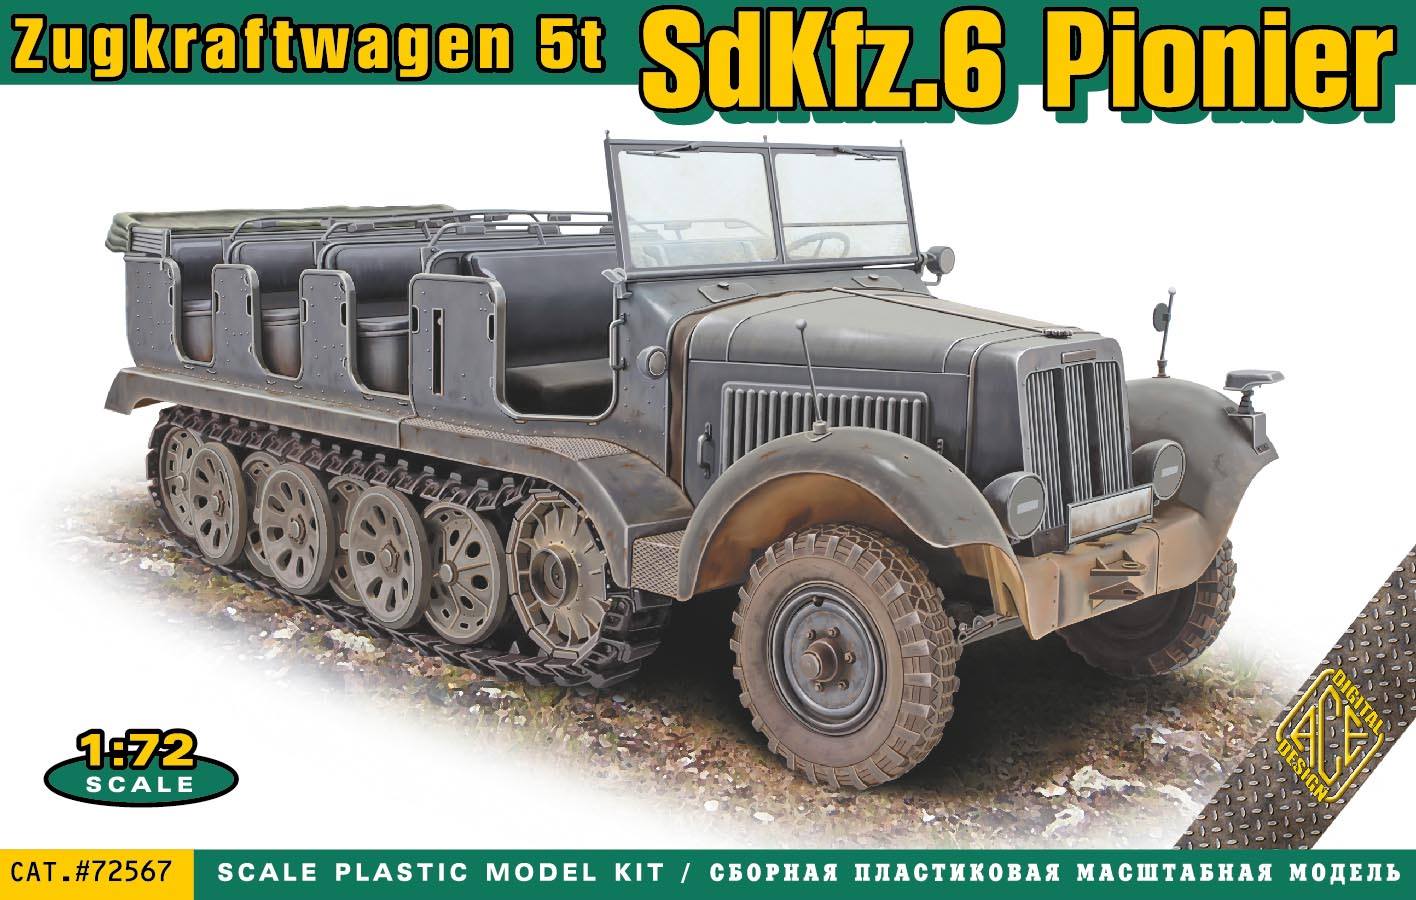 Sd.Kfz.6 Pionier Zugkraftwagen 5t